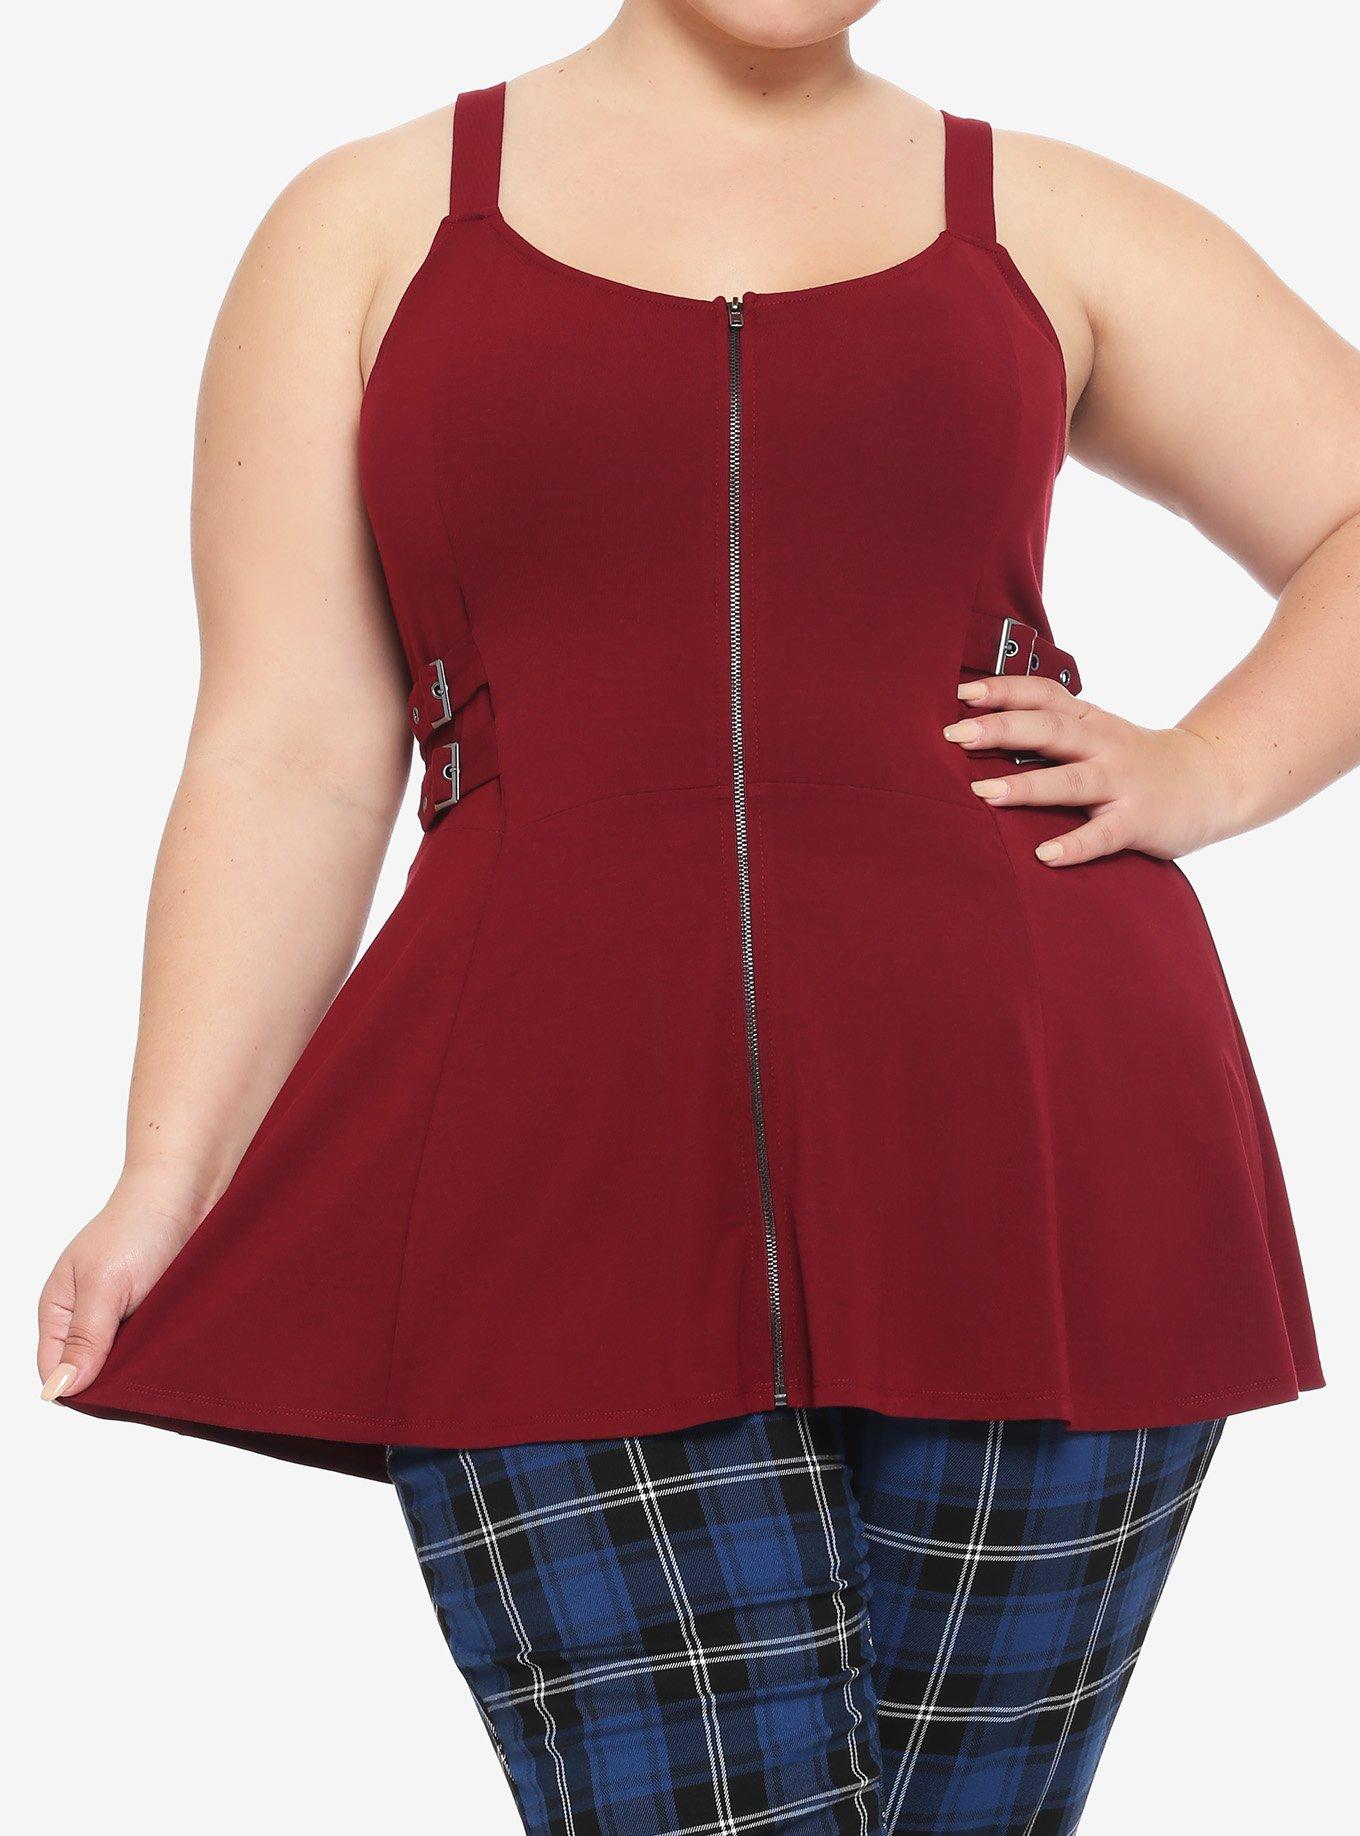 Burgundy Zip-Front Buckle Girls Peplum Tank Top Plus Size, RED, hi-res